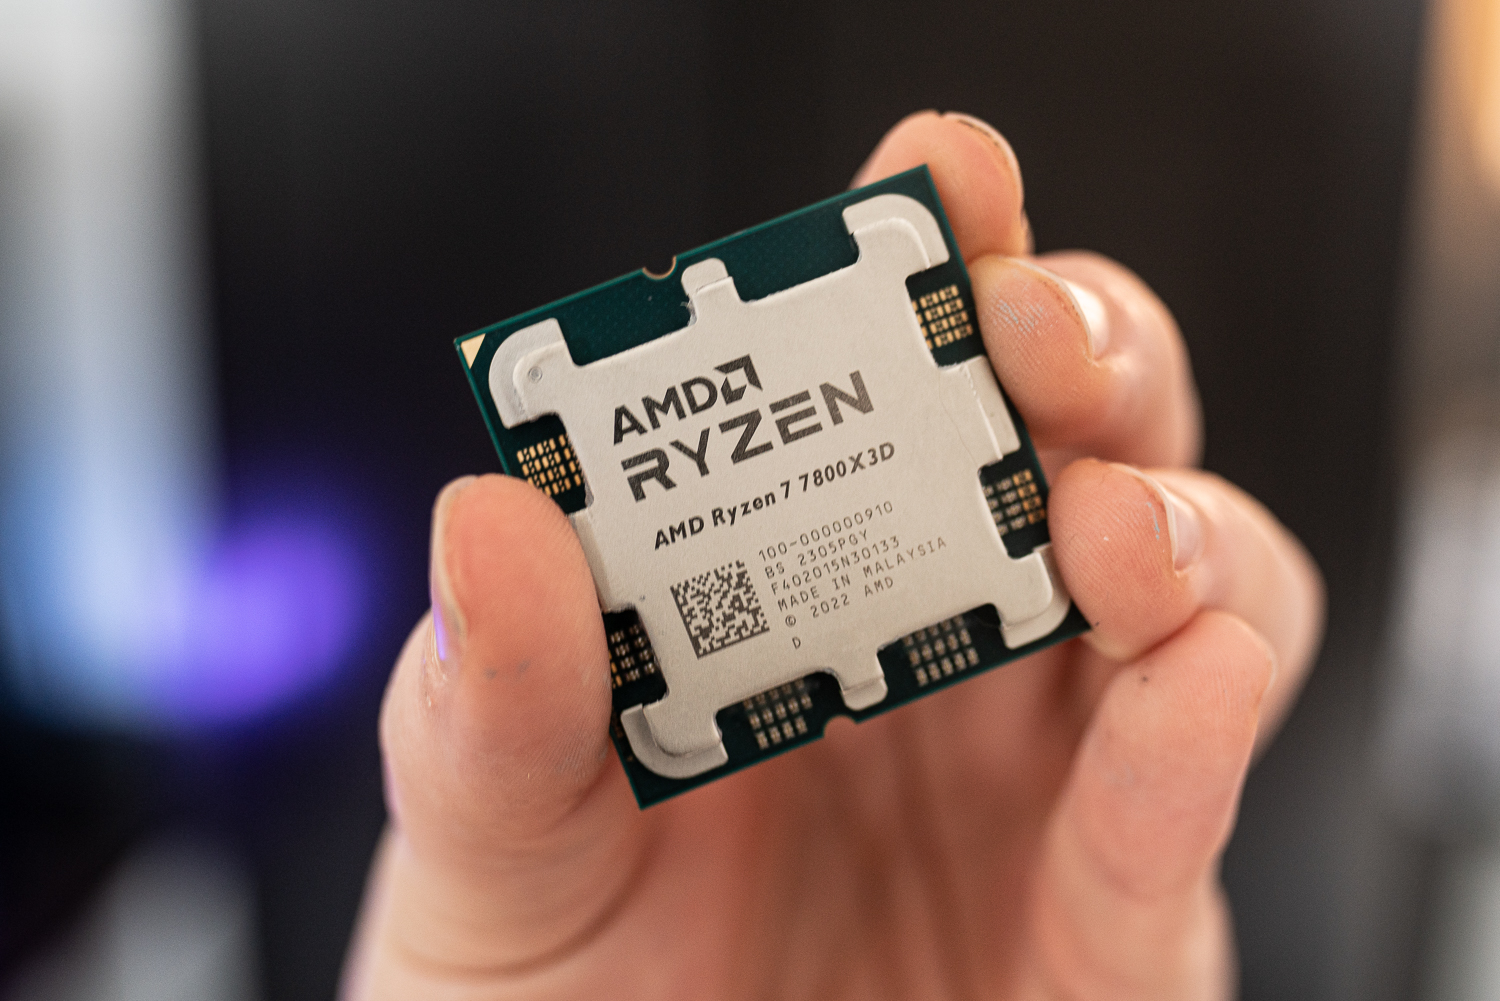 AMD Ryzen 5 5600 and 5500 Desktop Processor Review